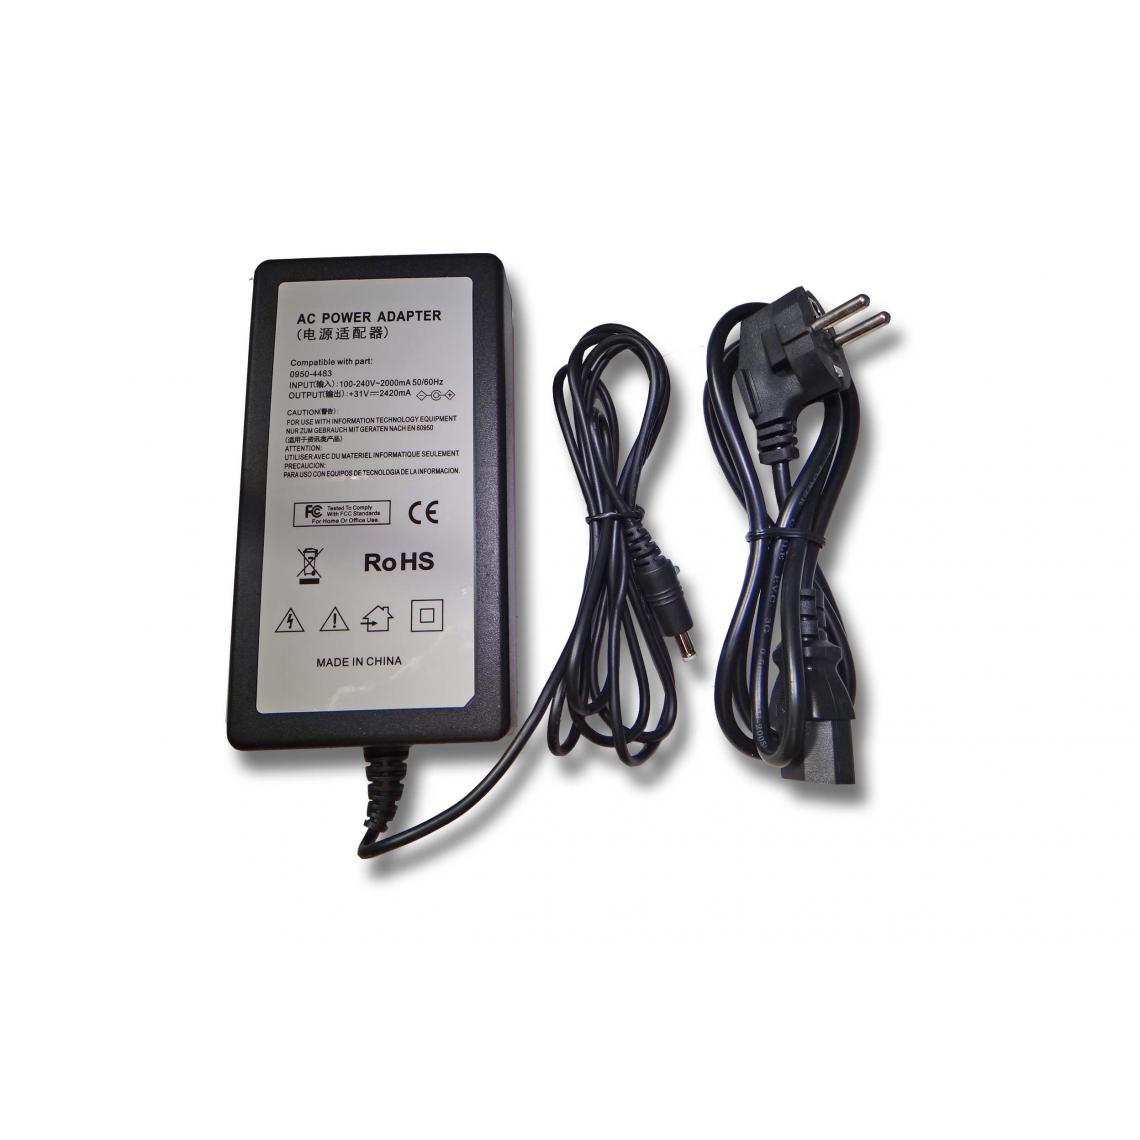 Vhbw - vhbw Imprimante Adaptateur bloc d'alimentation Câble d'alimentation Chargeur remplace HP 0957-2125 pour imprimante - 0,53 / 2,42A - Accessoires alimentation